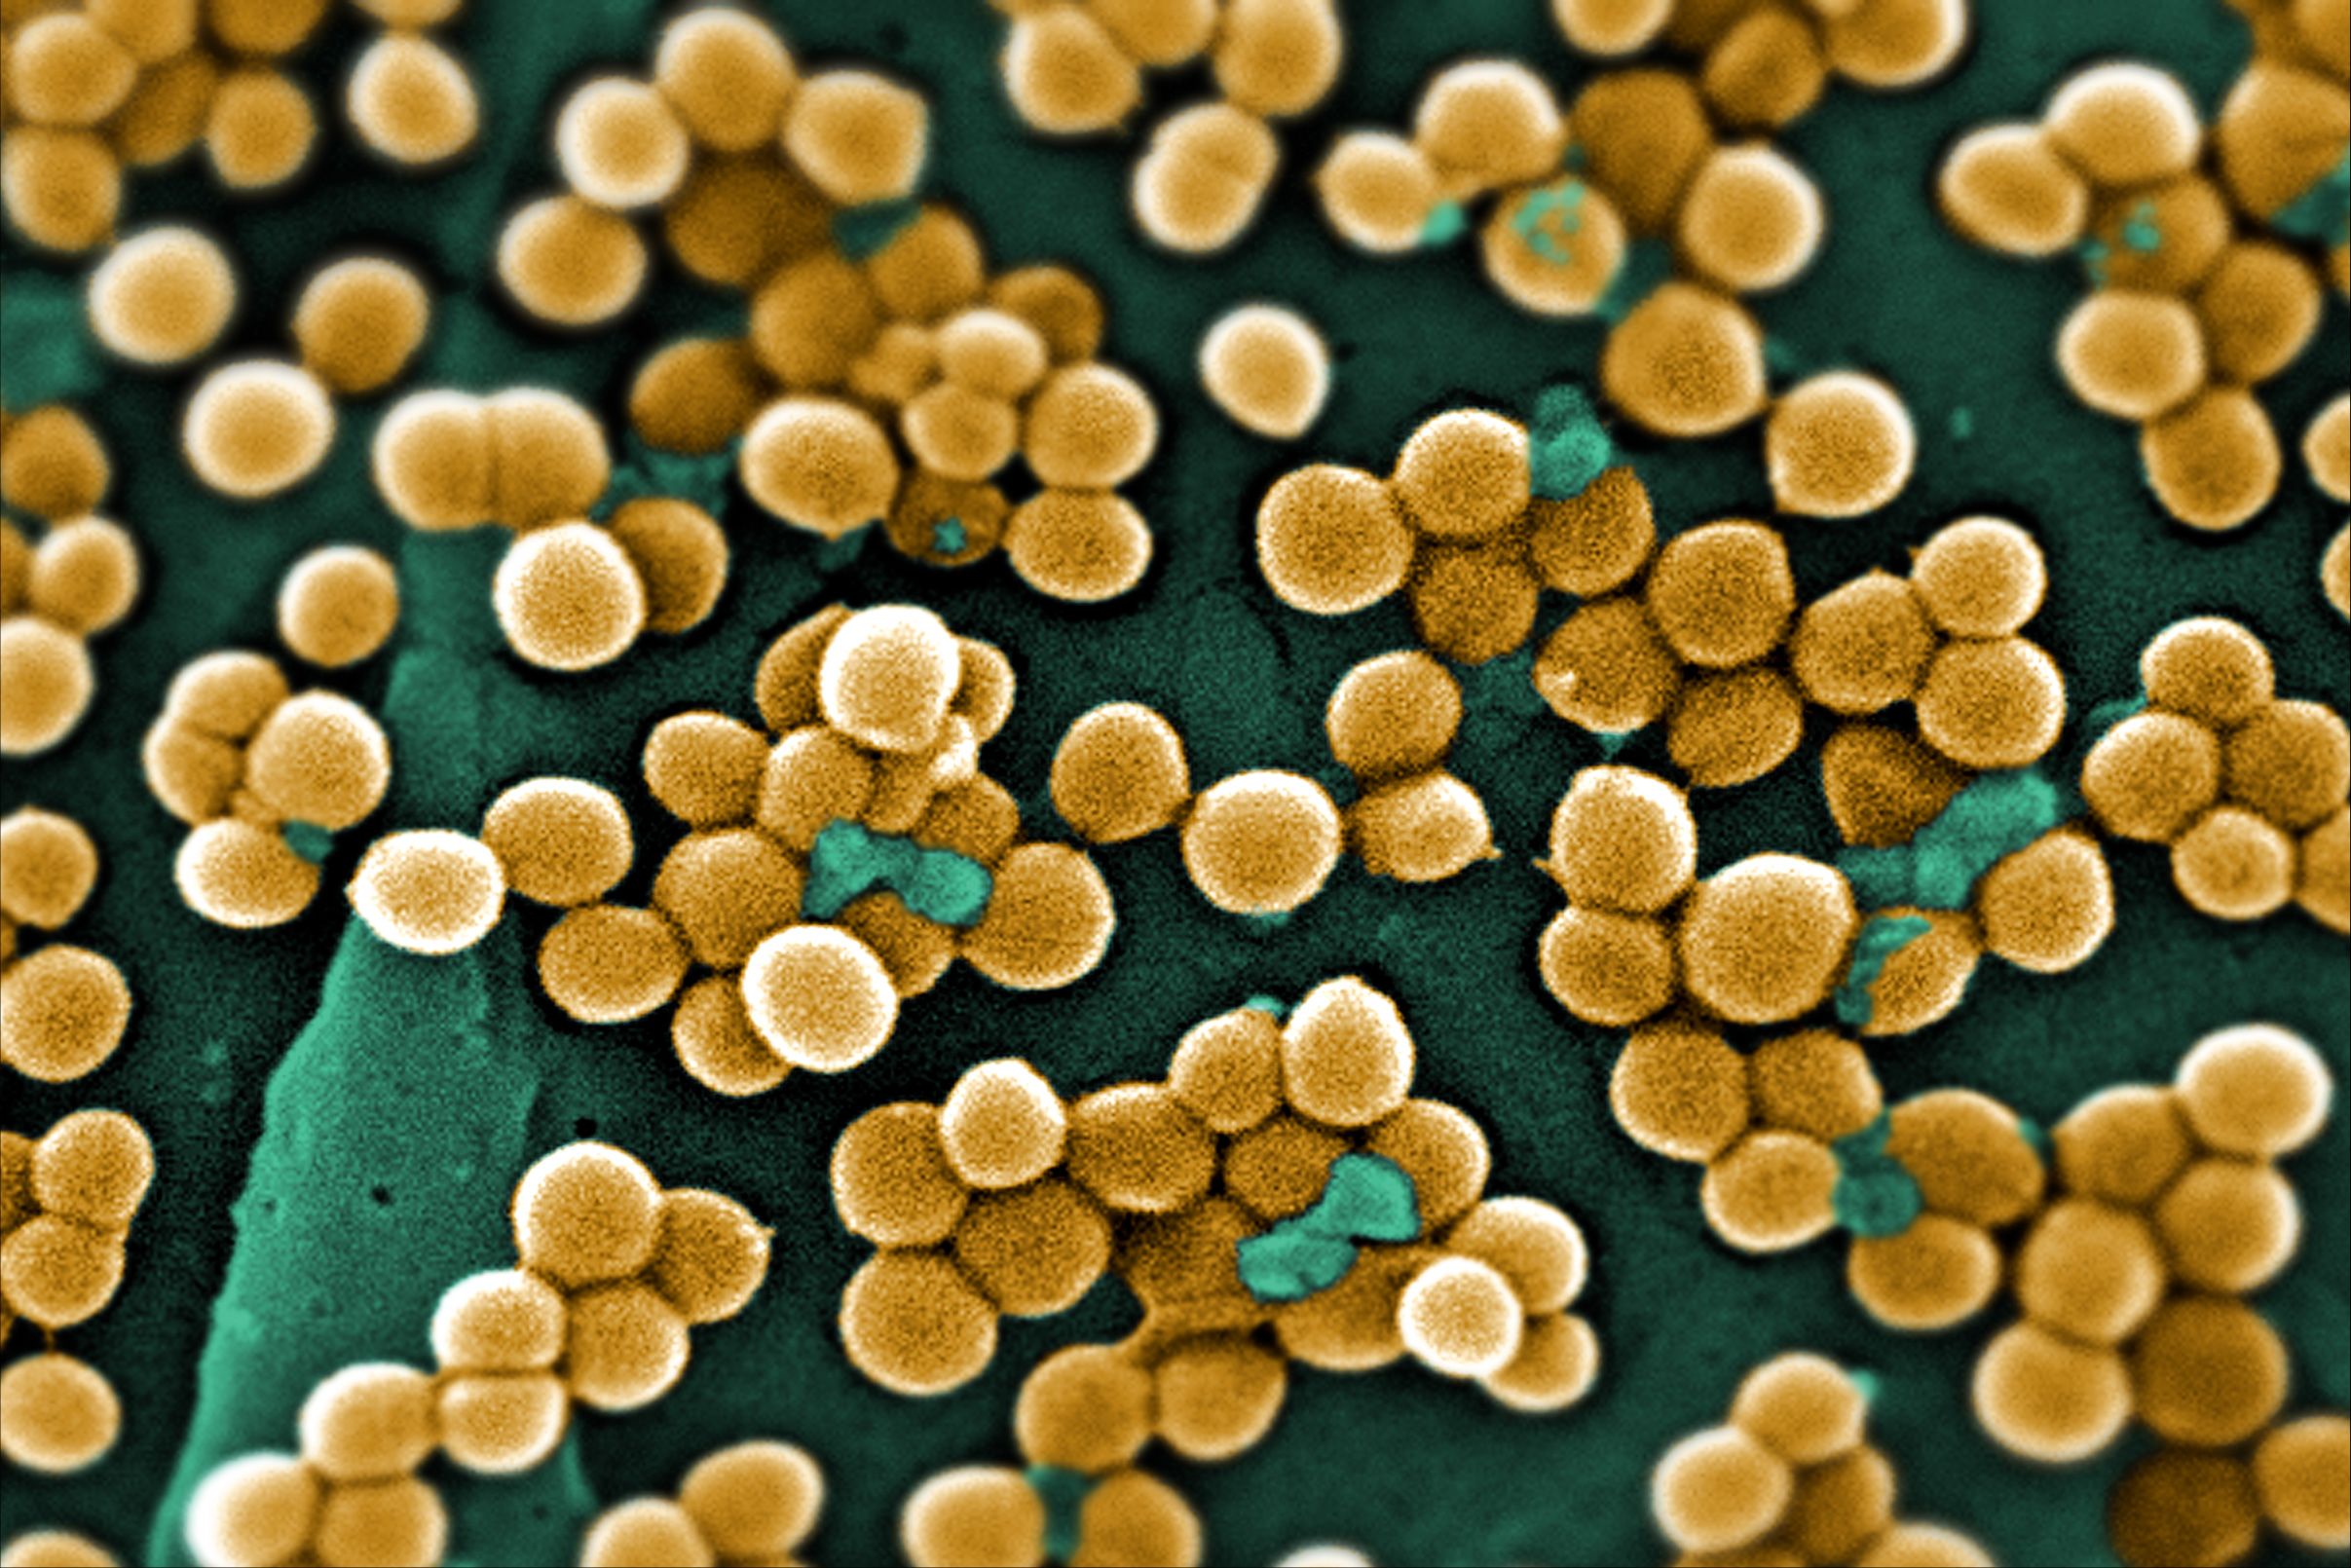 Clumps of Bacteria